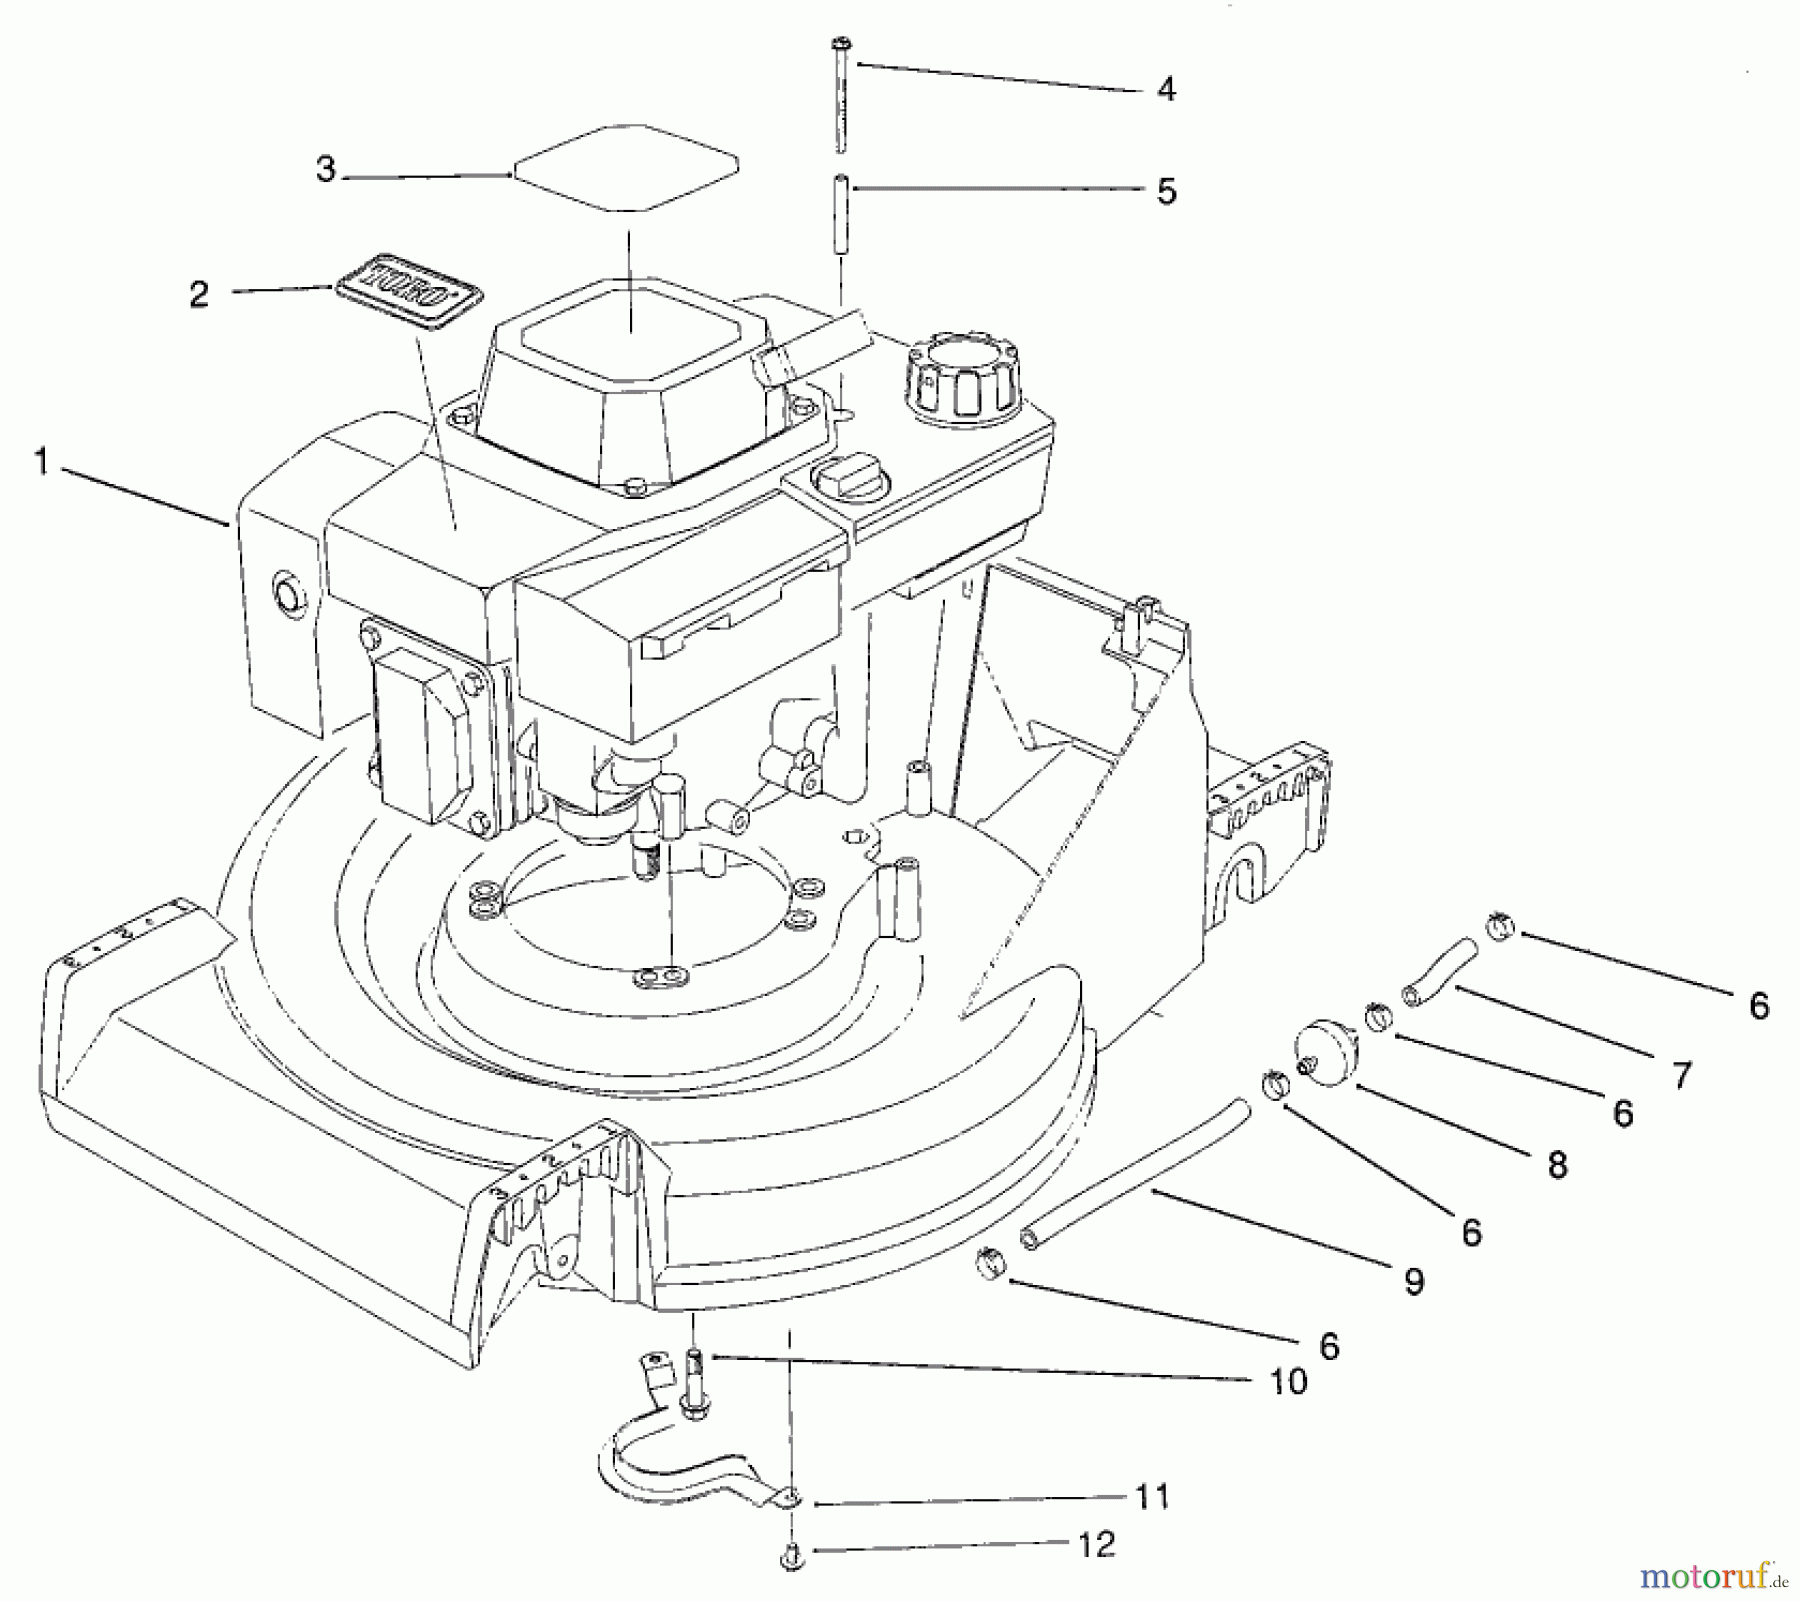  Toro Neu Mowers, Walk-Behind Seite 2 26620BG - Toro Lawnmower, 1992 (2000001-2999999) ENGINE ASSEMBLY